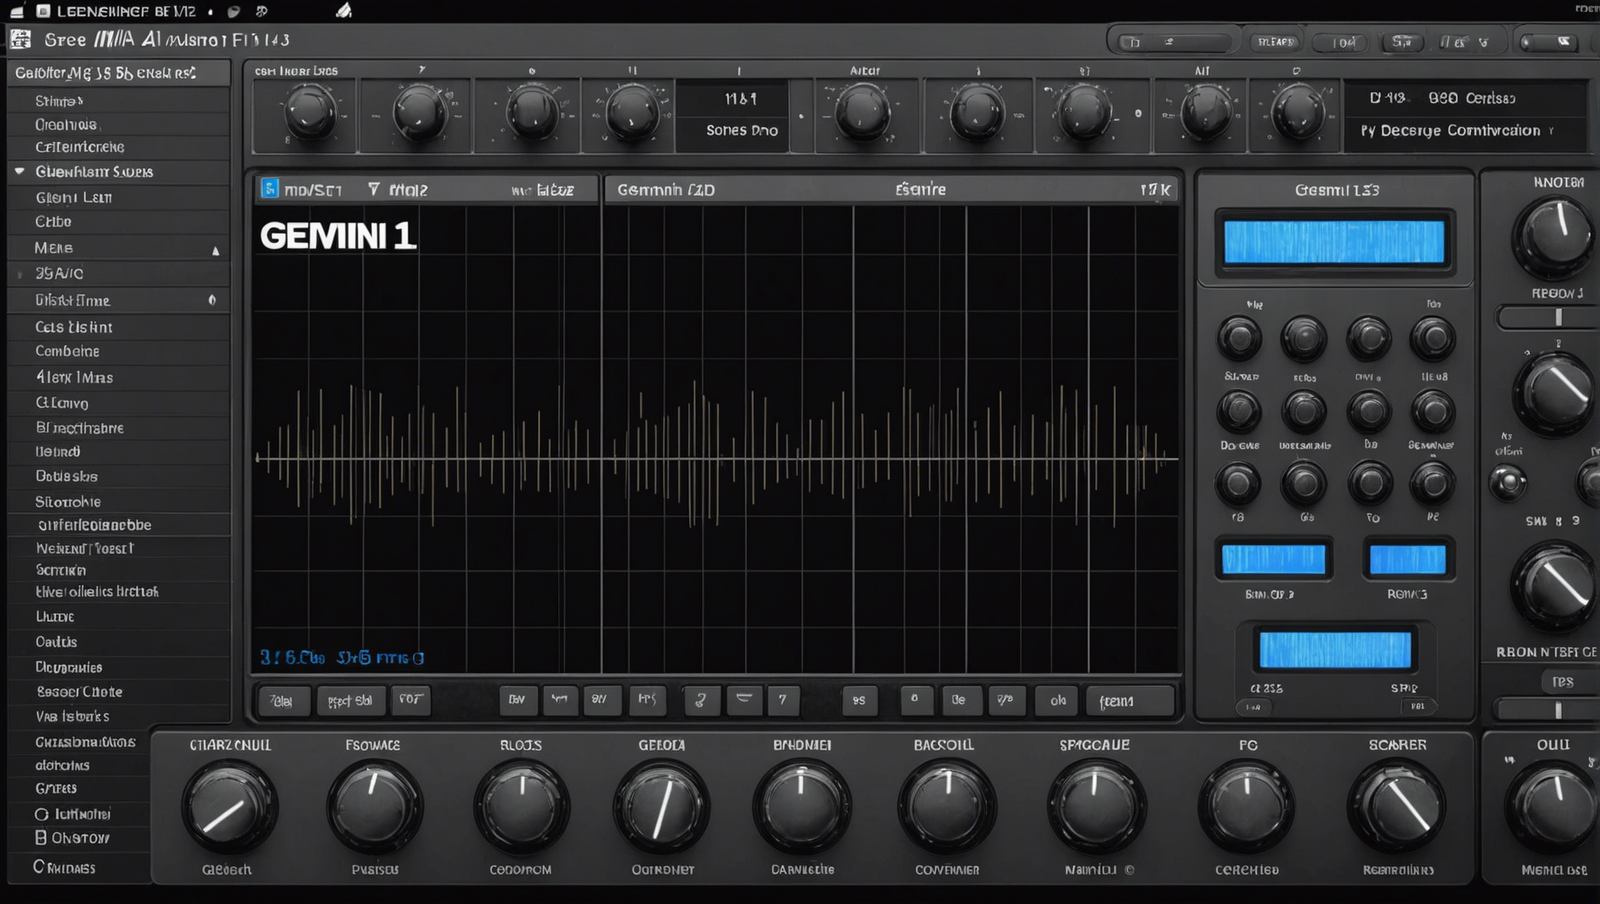 gemini 1.5 pro : la révolution du son ? découvrez sa nouvelle fonctionnalité audio incroyable !